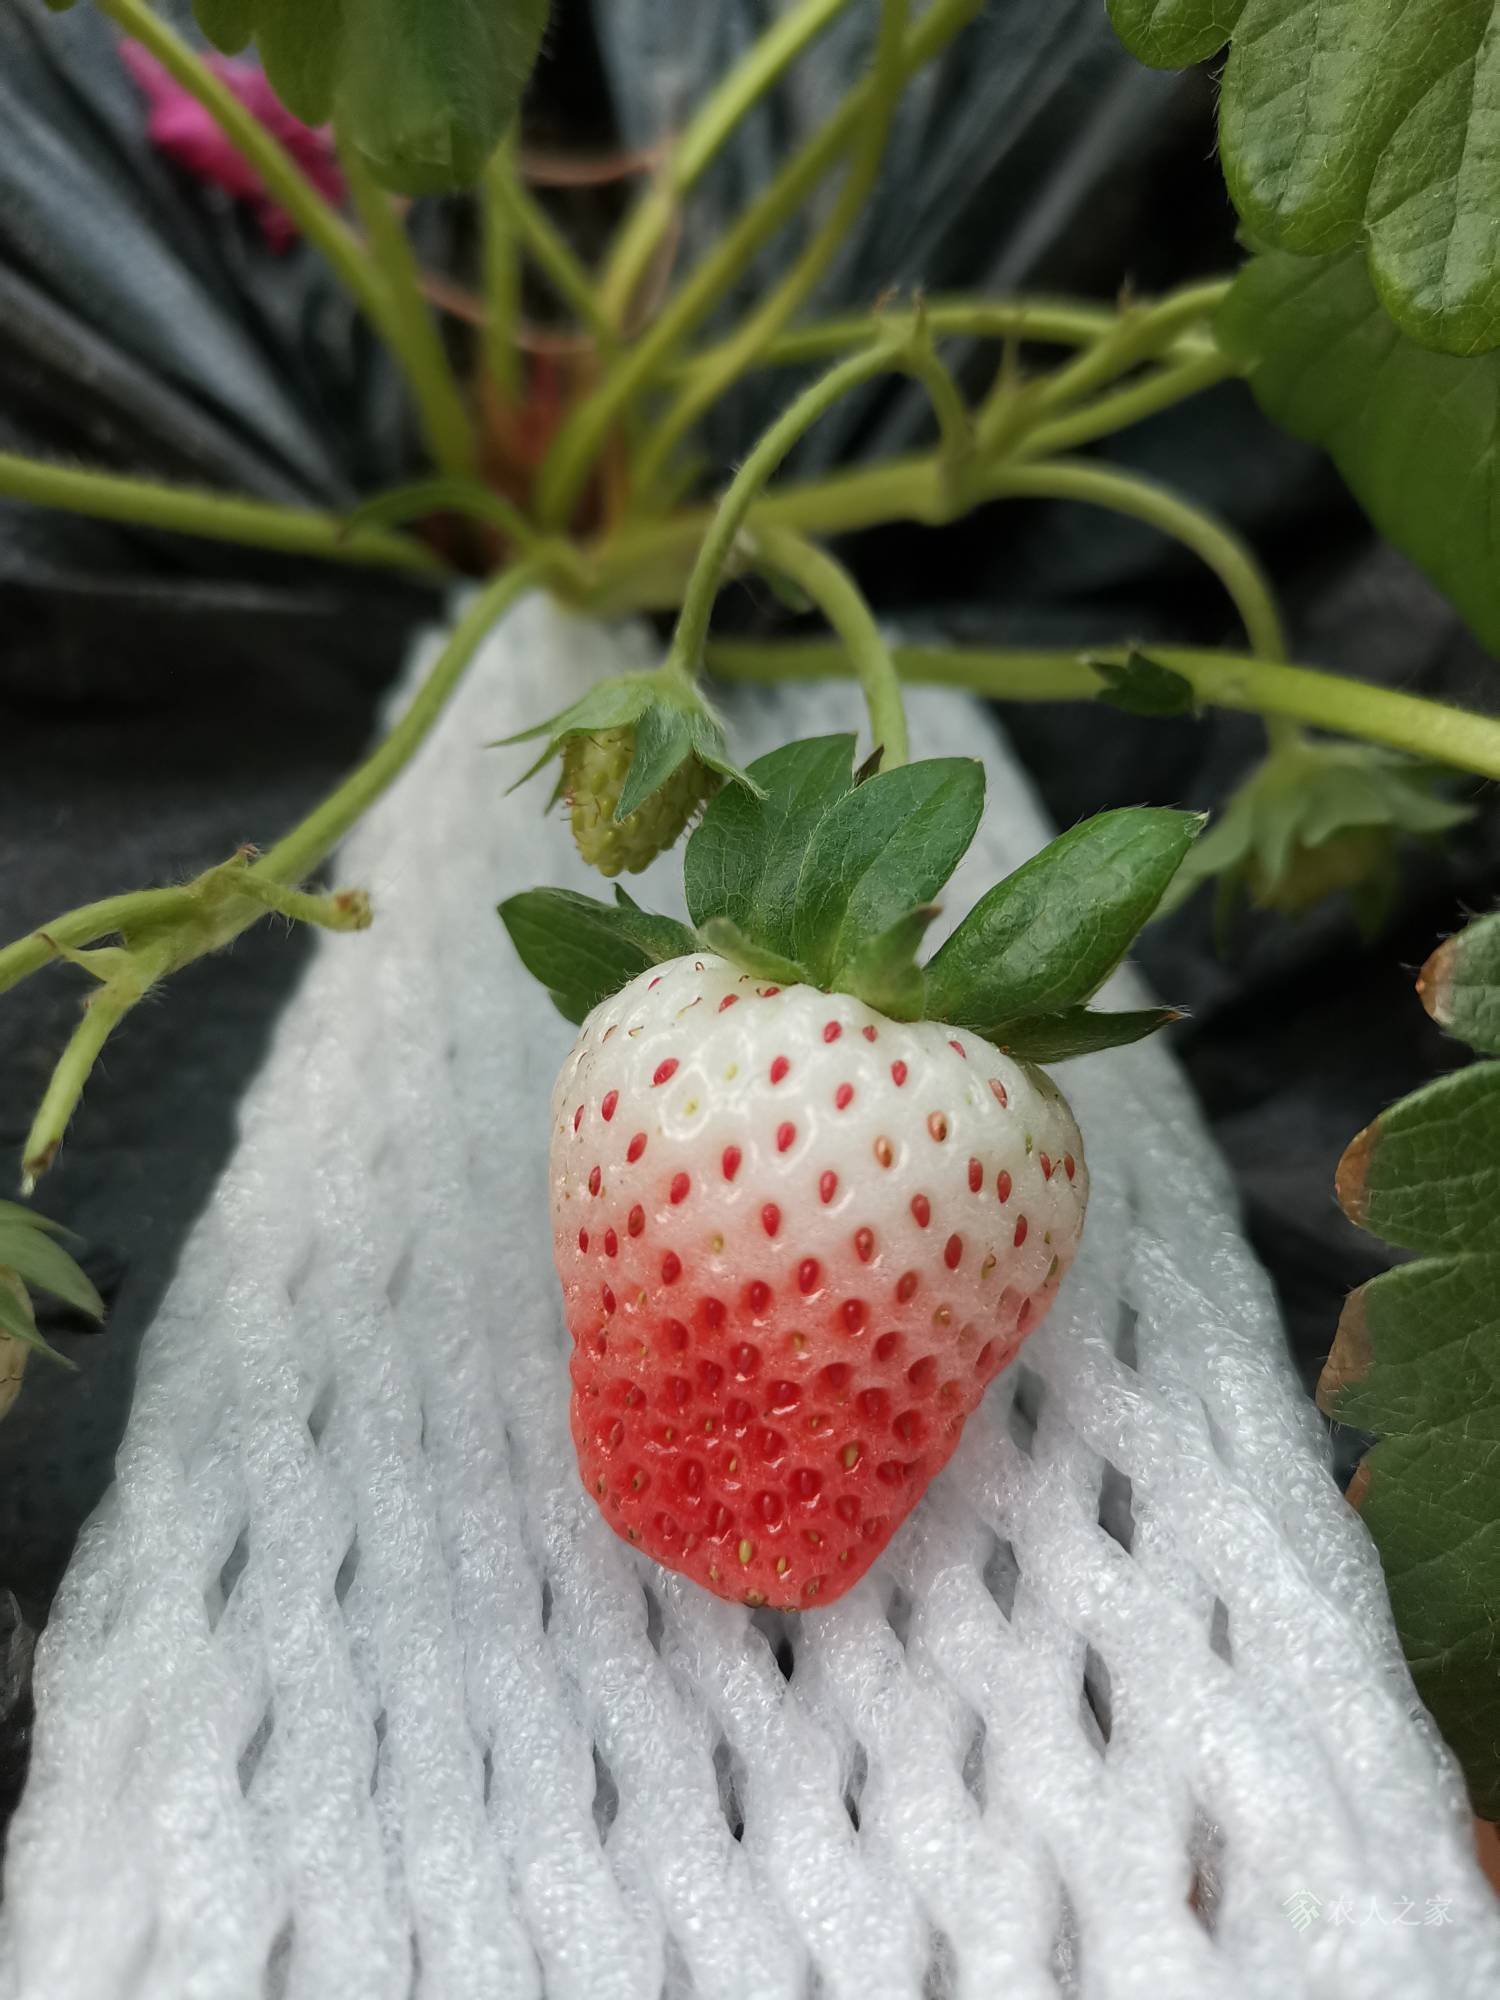 我的2021:对于草莓各个期间施肥的一点贯通1650 作者:ohyne 